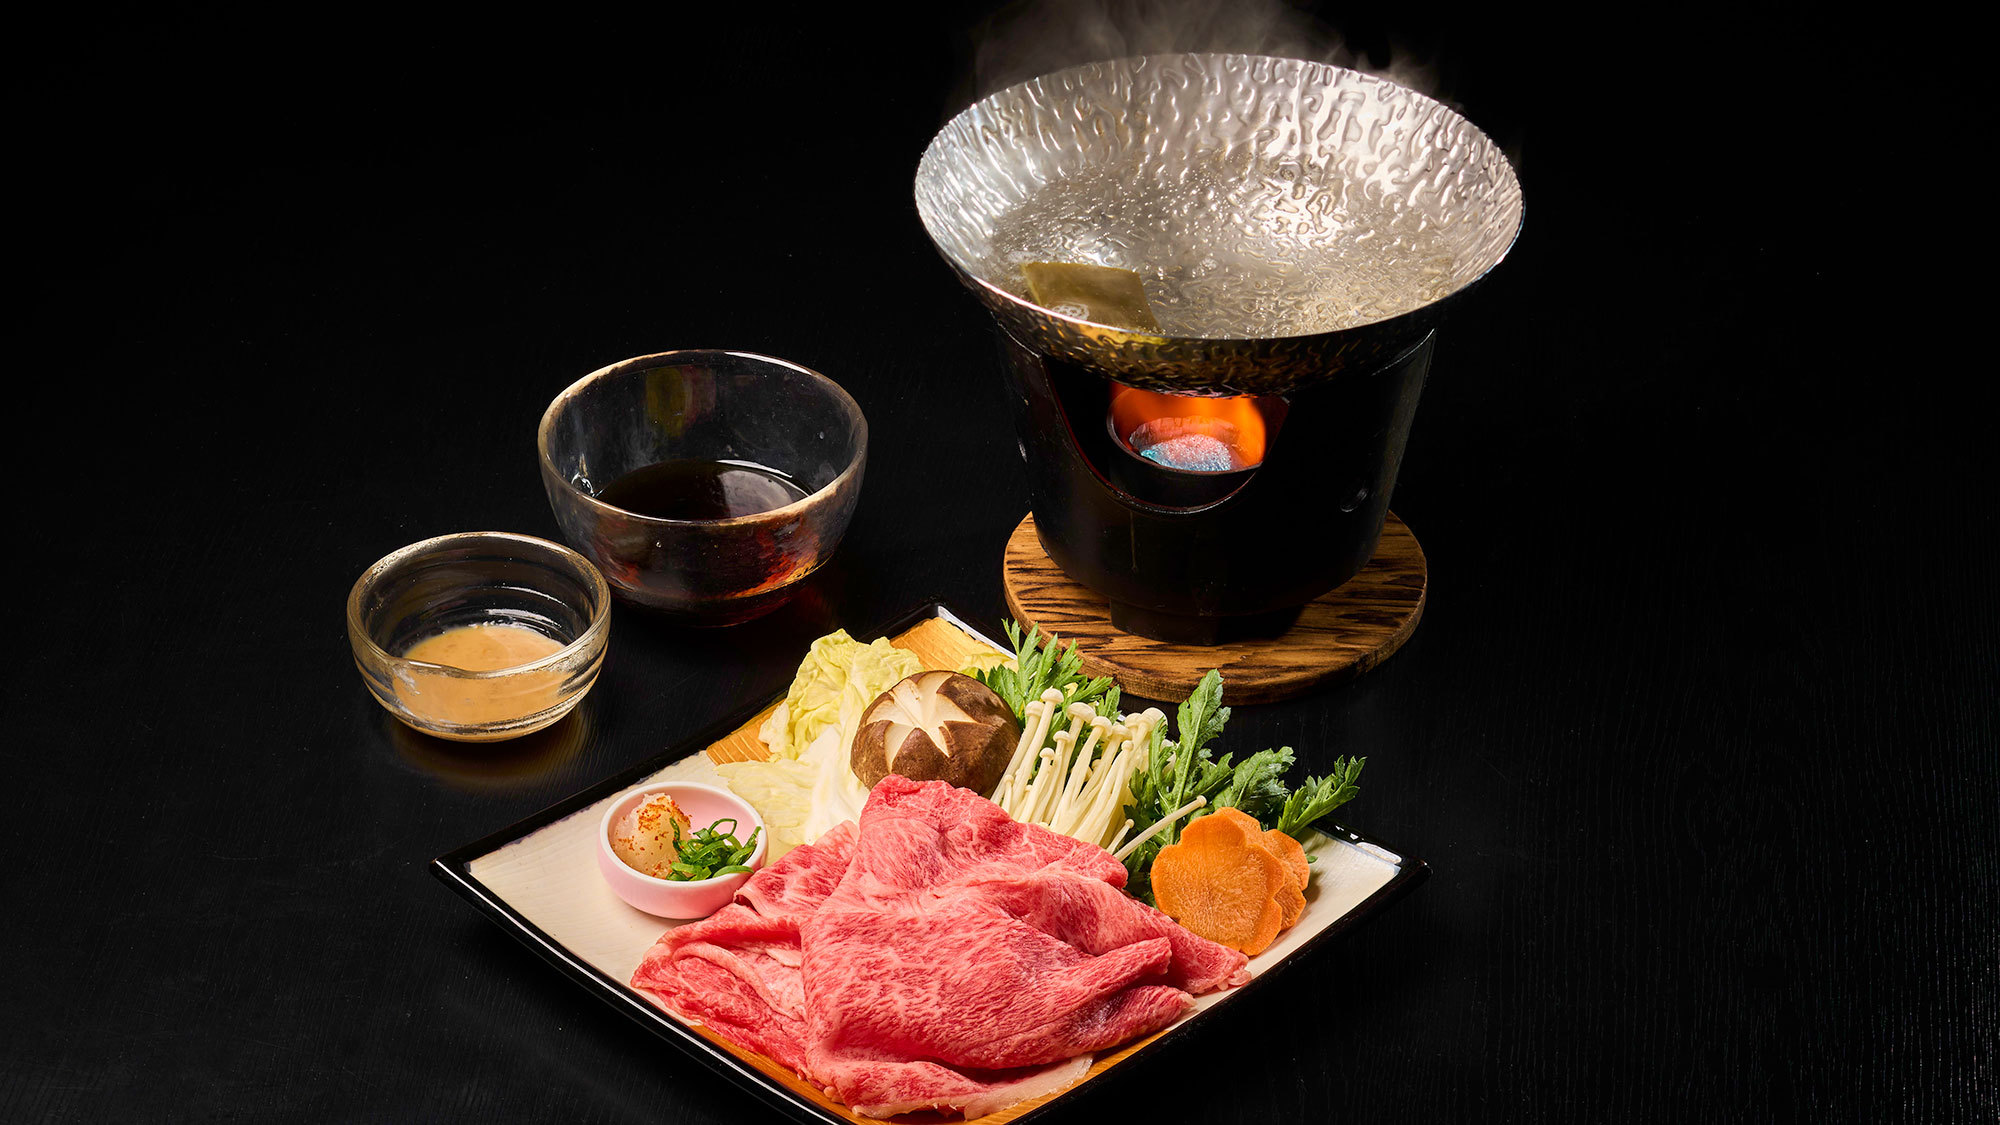 ・【お食事：松阪牛しゃぶしゃぶ】肉の甘みをしっとりと楽しめるしゃぶしゃぶお野菜とともにどうぞ